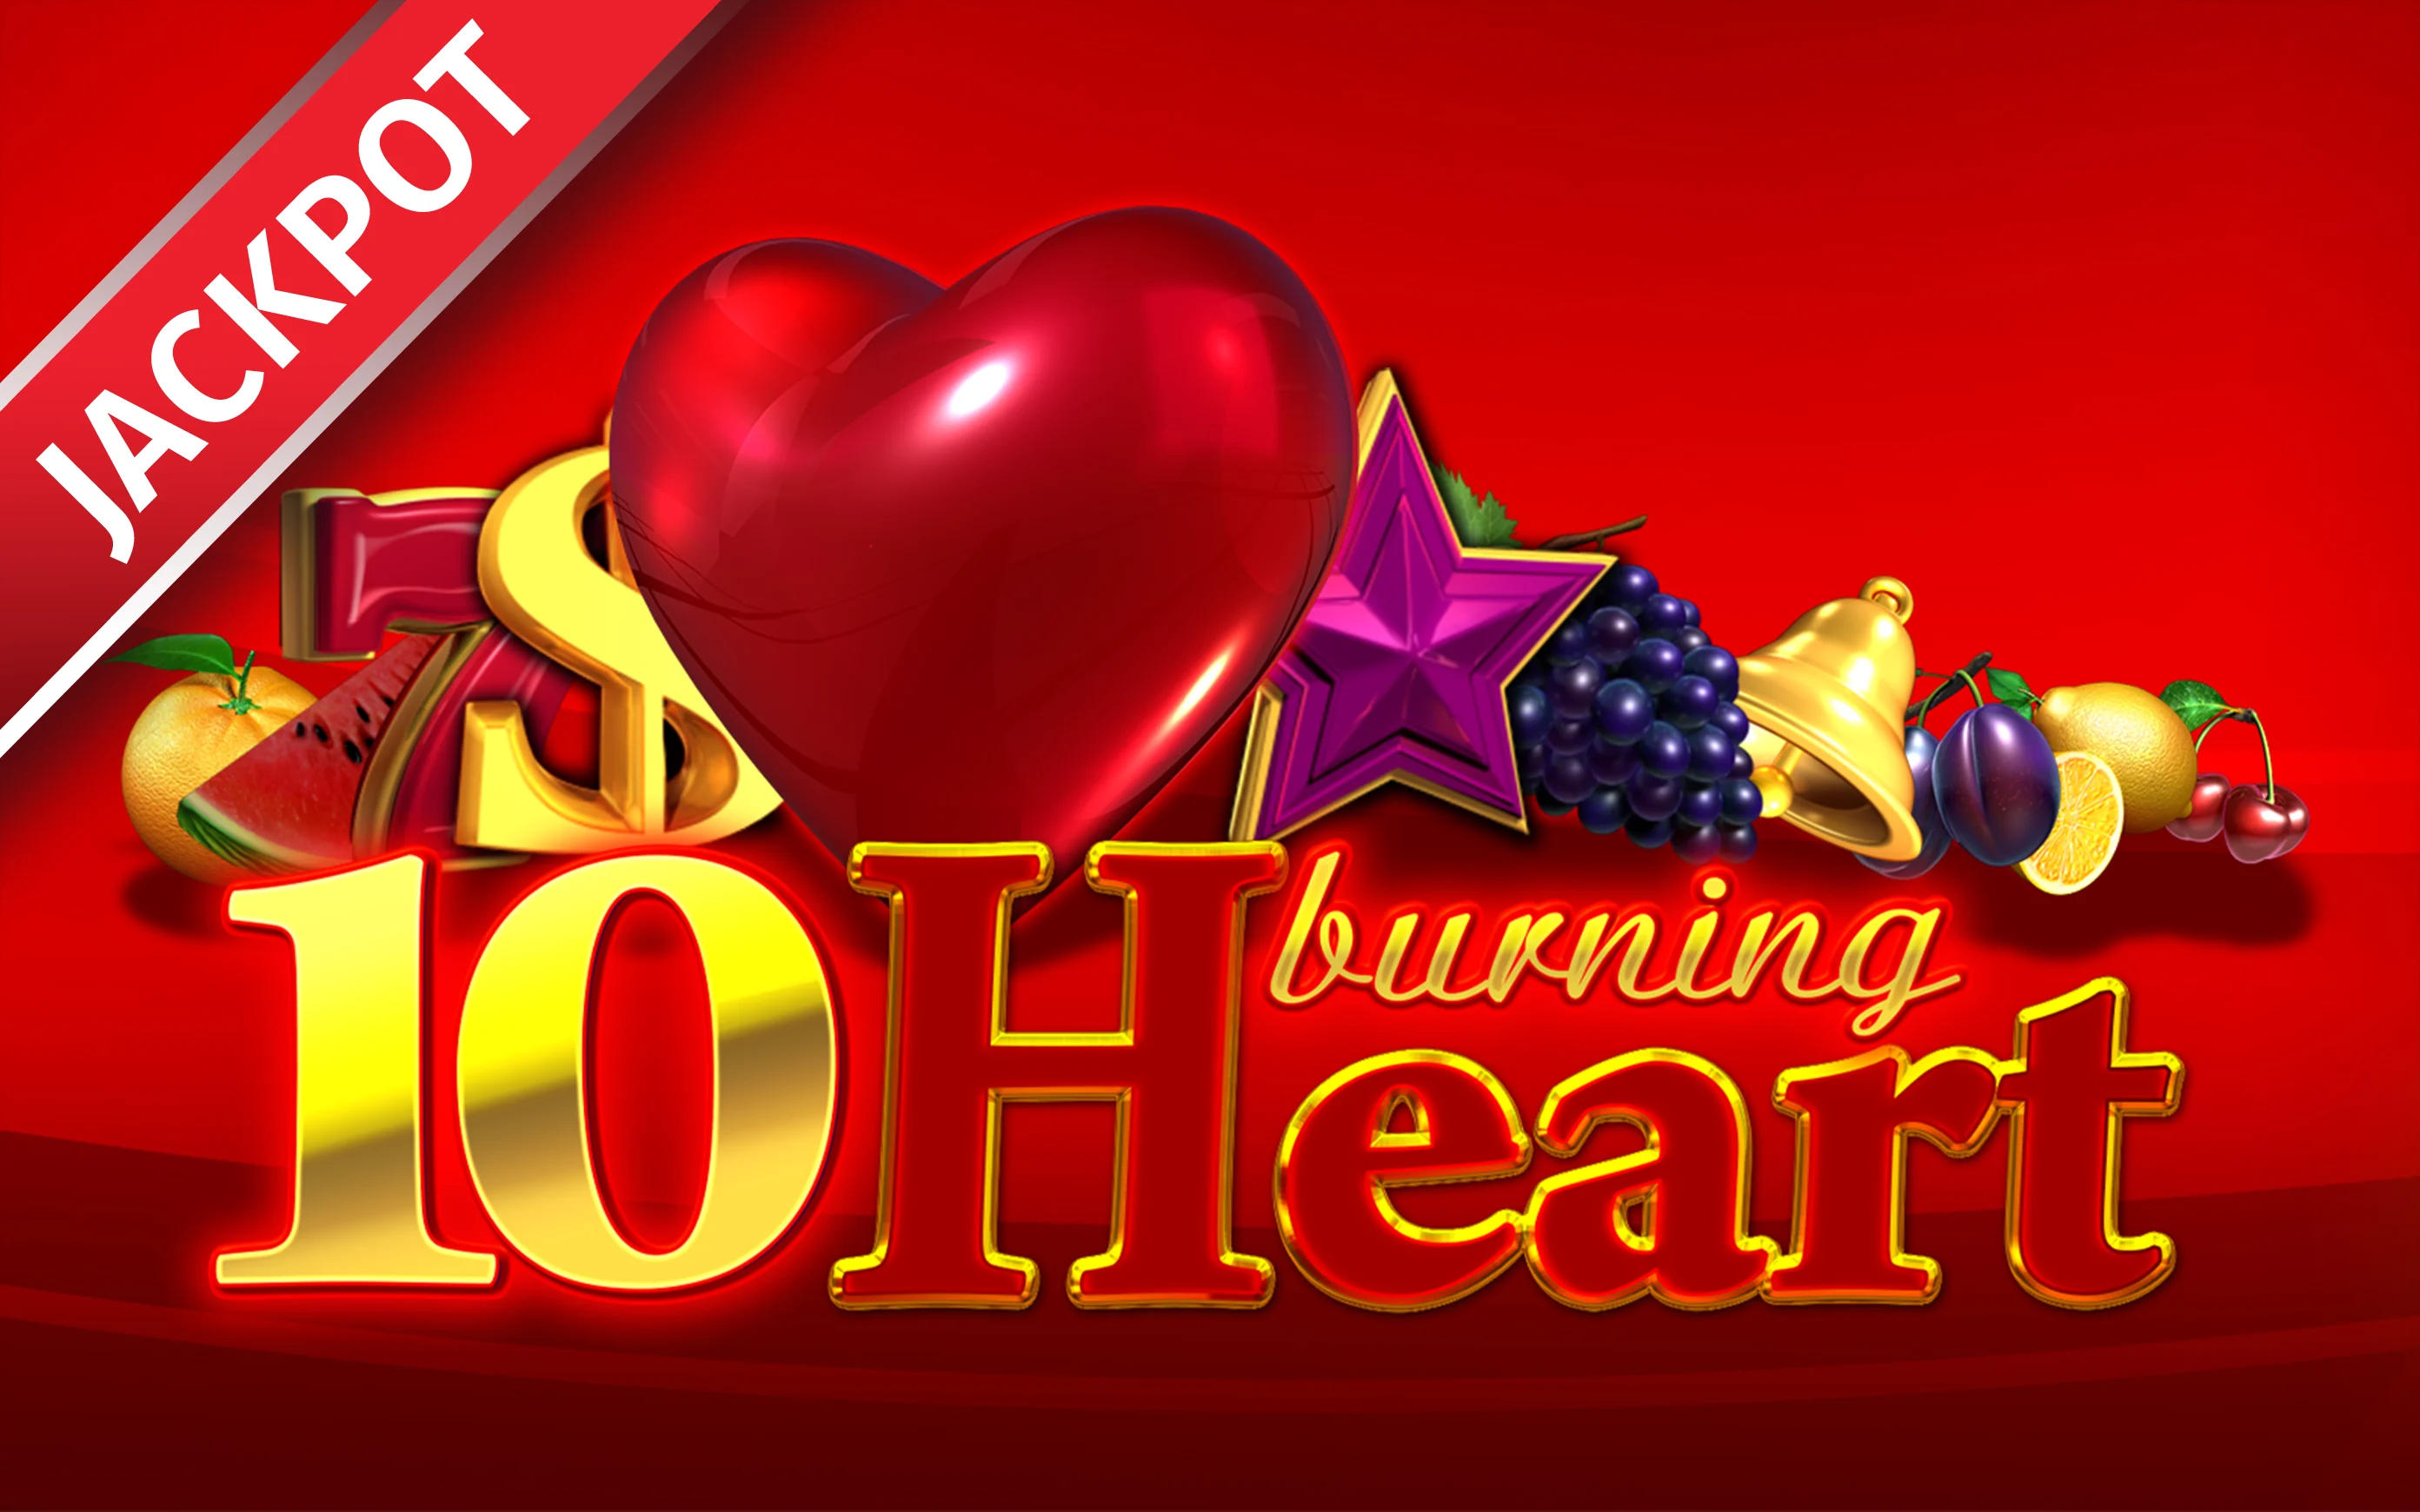 Jouer à 10 Burning heart sur le casino en ligne Starcasino.be